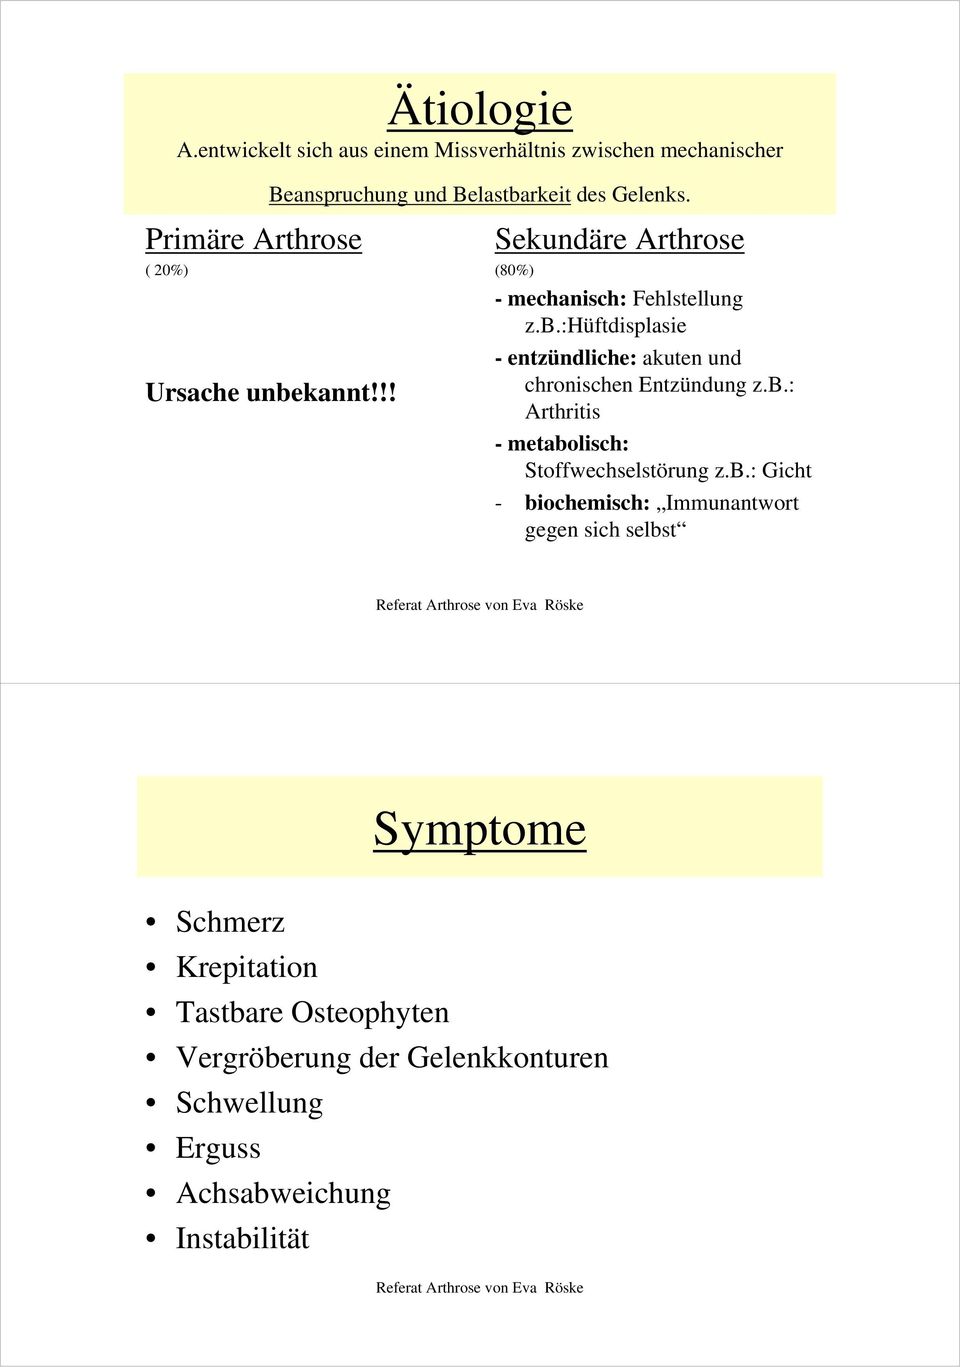 b.: Arthritis - metabolisch: Stoffwechselstörung z.b.: Gicht - biochemisch: Immunantwort gegen sich selbst Symptome Schmerz